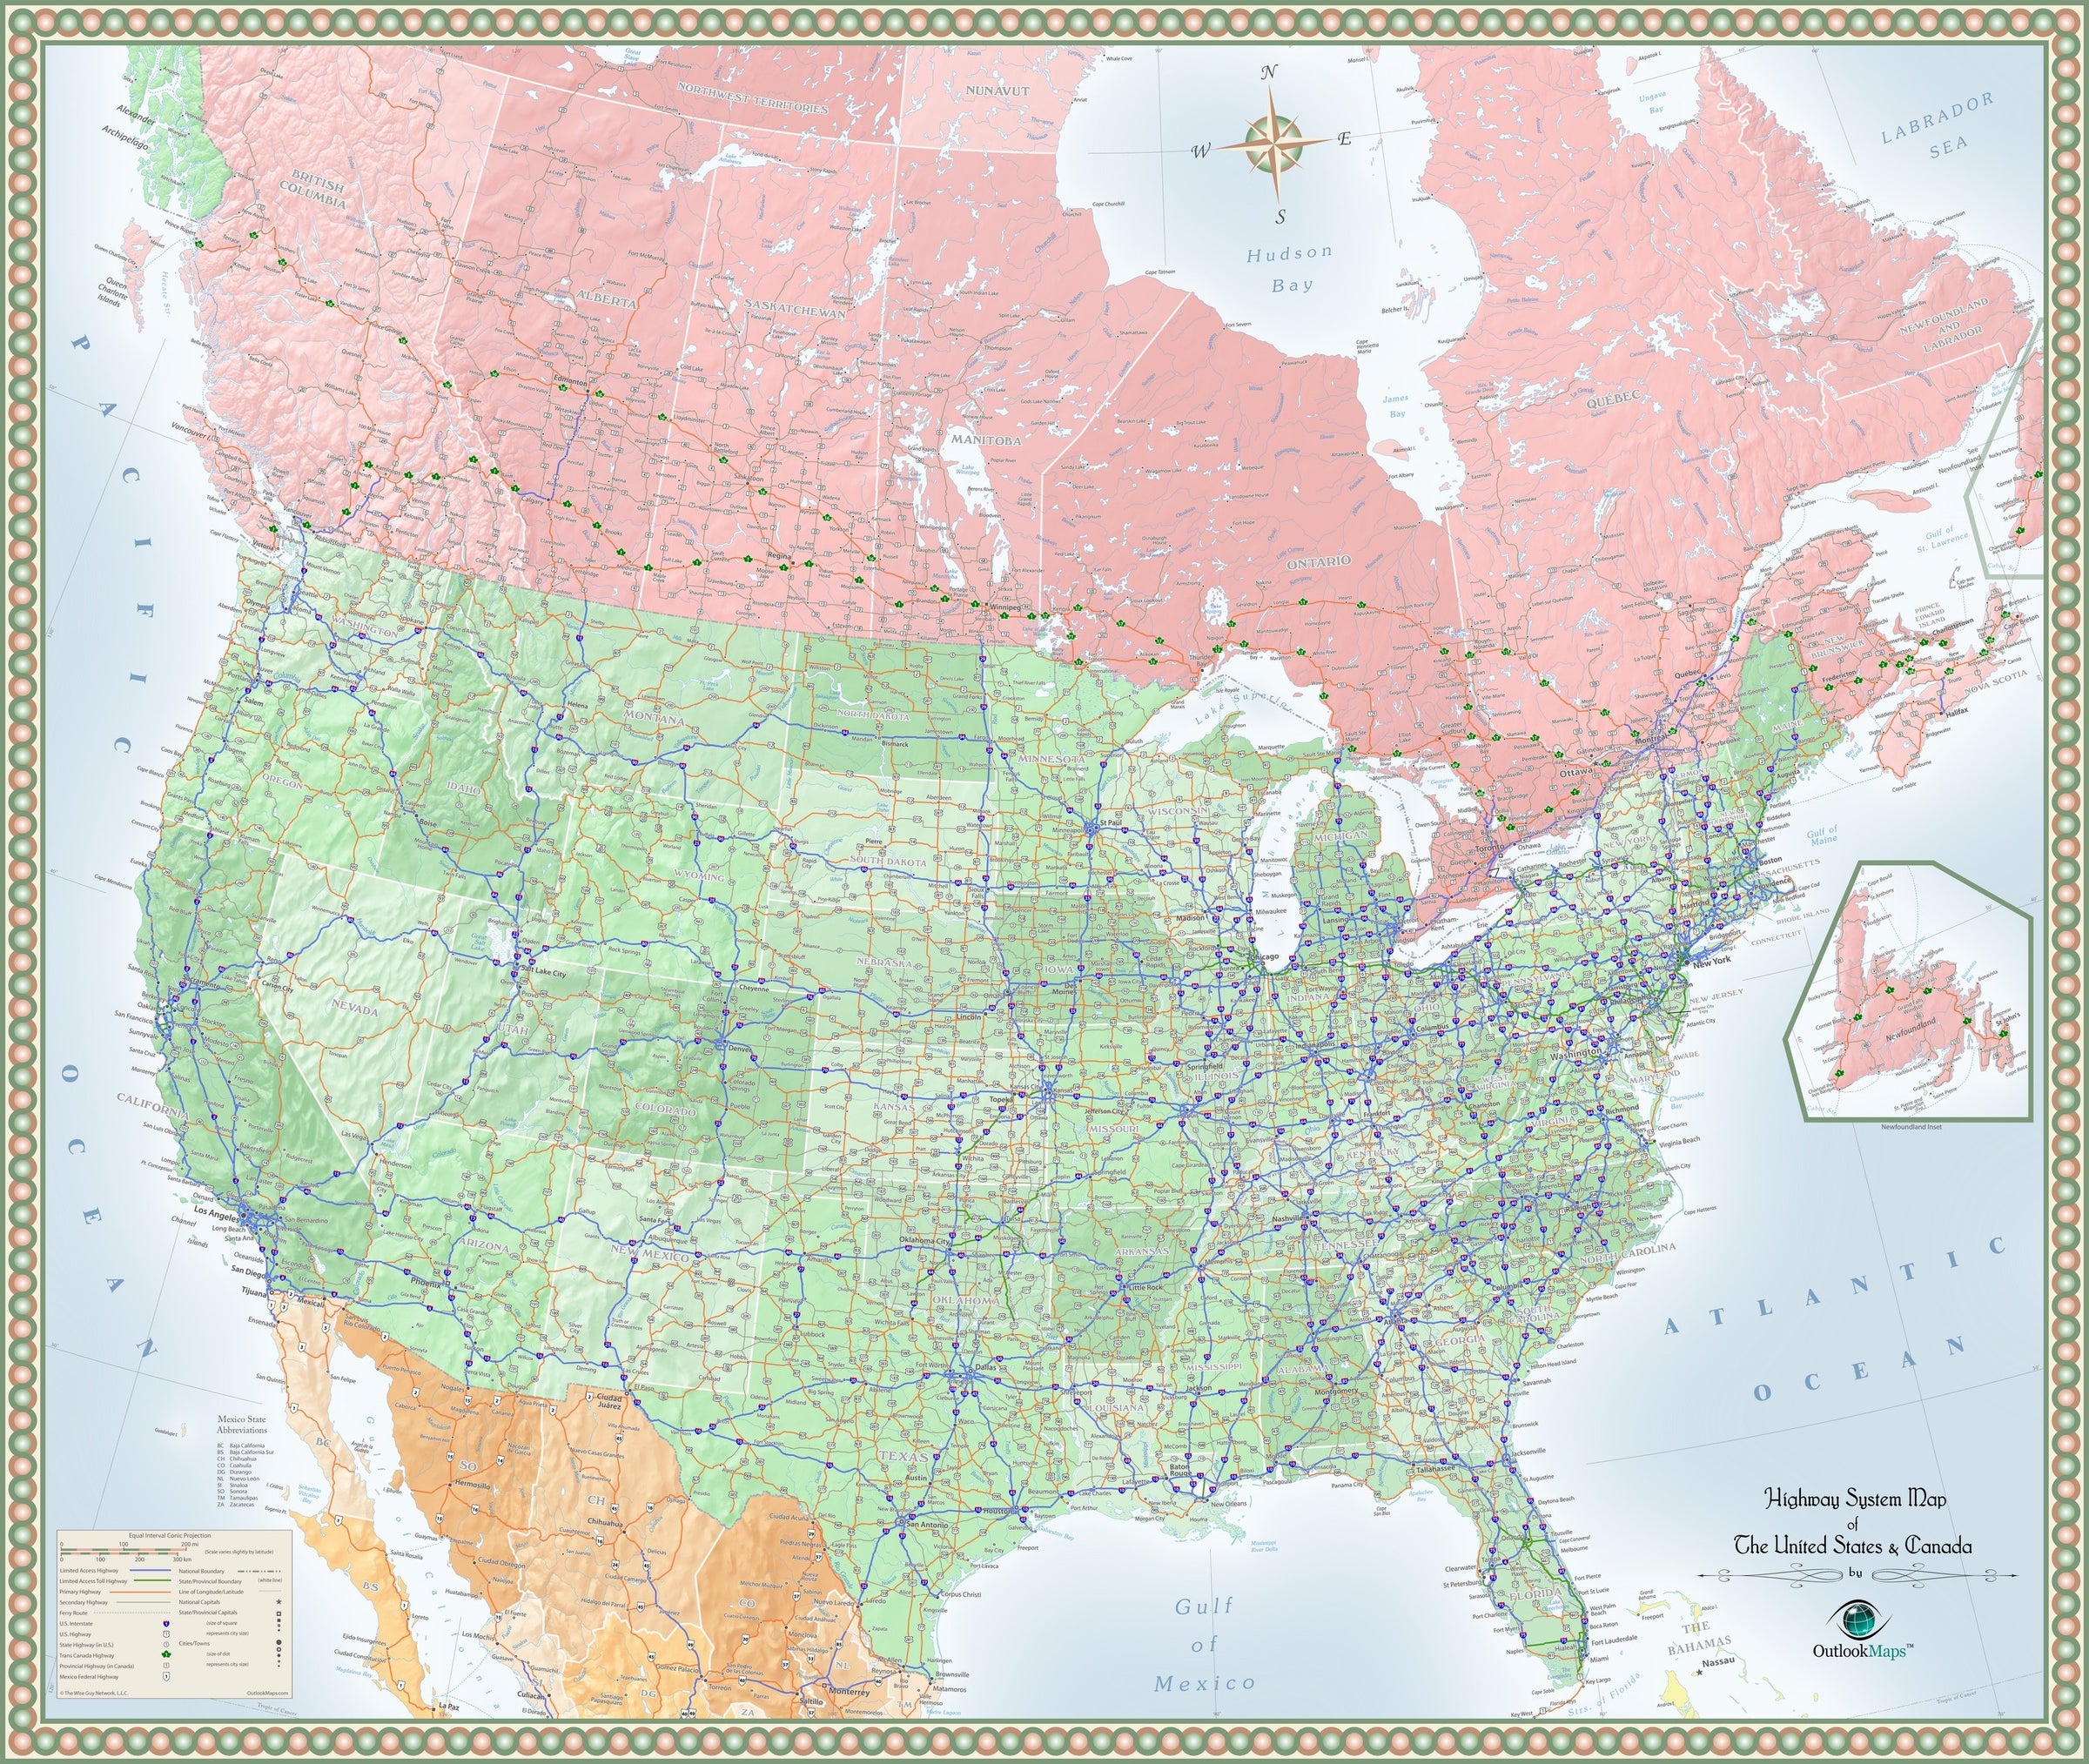 USA and Canada Highway Wall Map | Maps.com.com